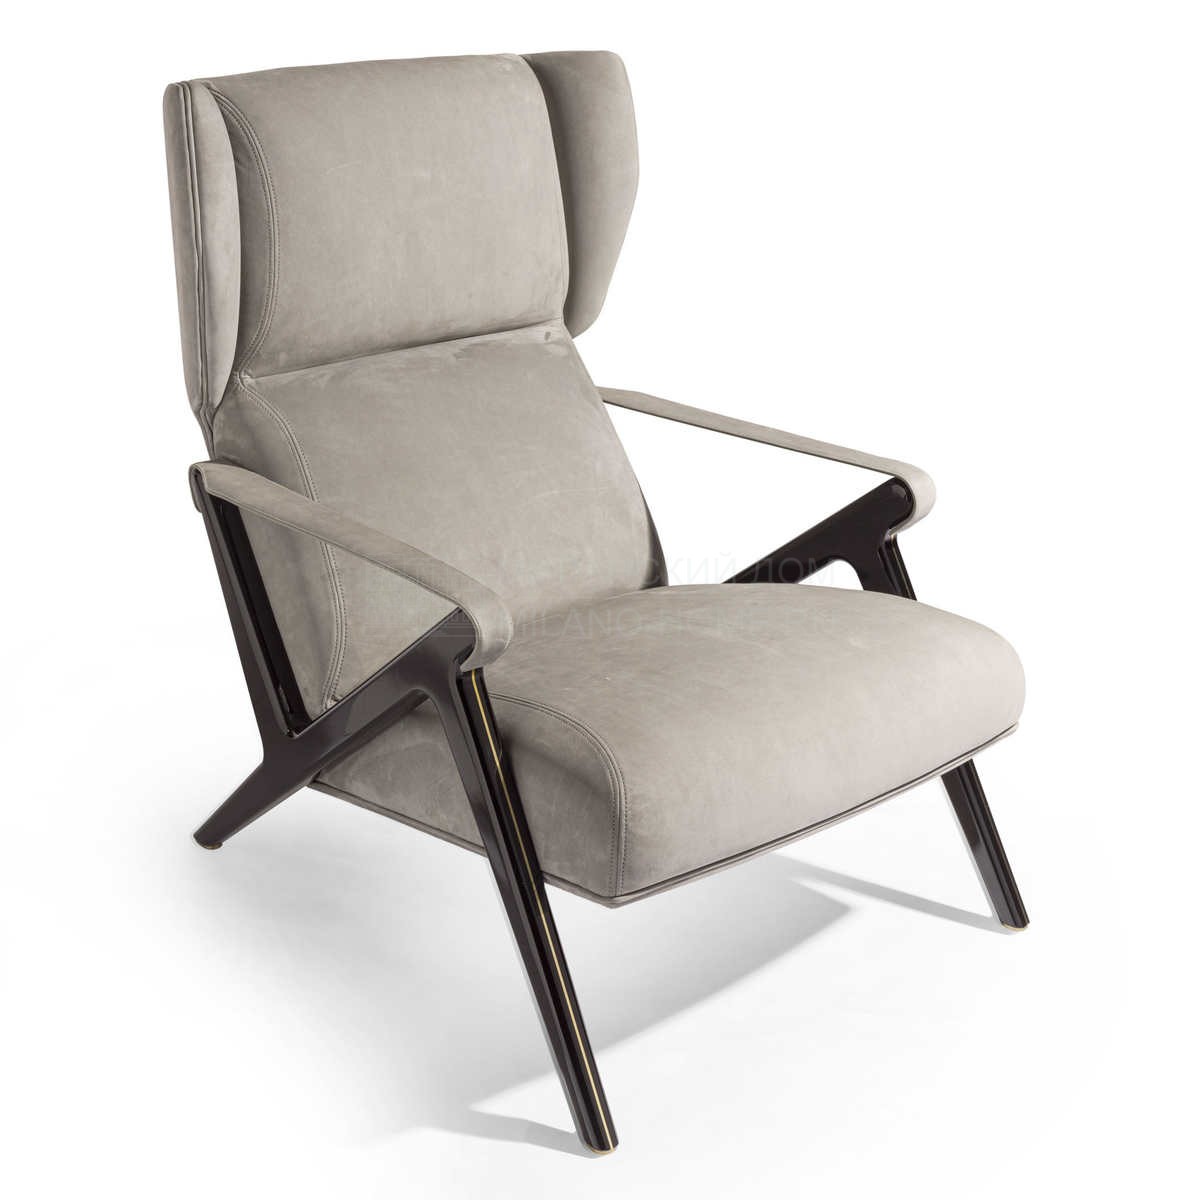 Лаунж кресло Imagine chair из Италии фабрики IPE CAVALLI VISIONNAIRE